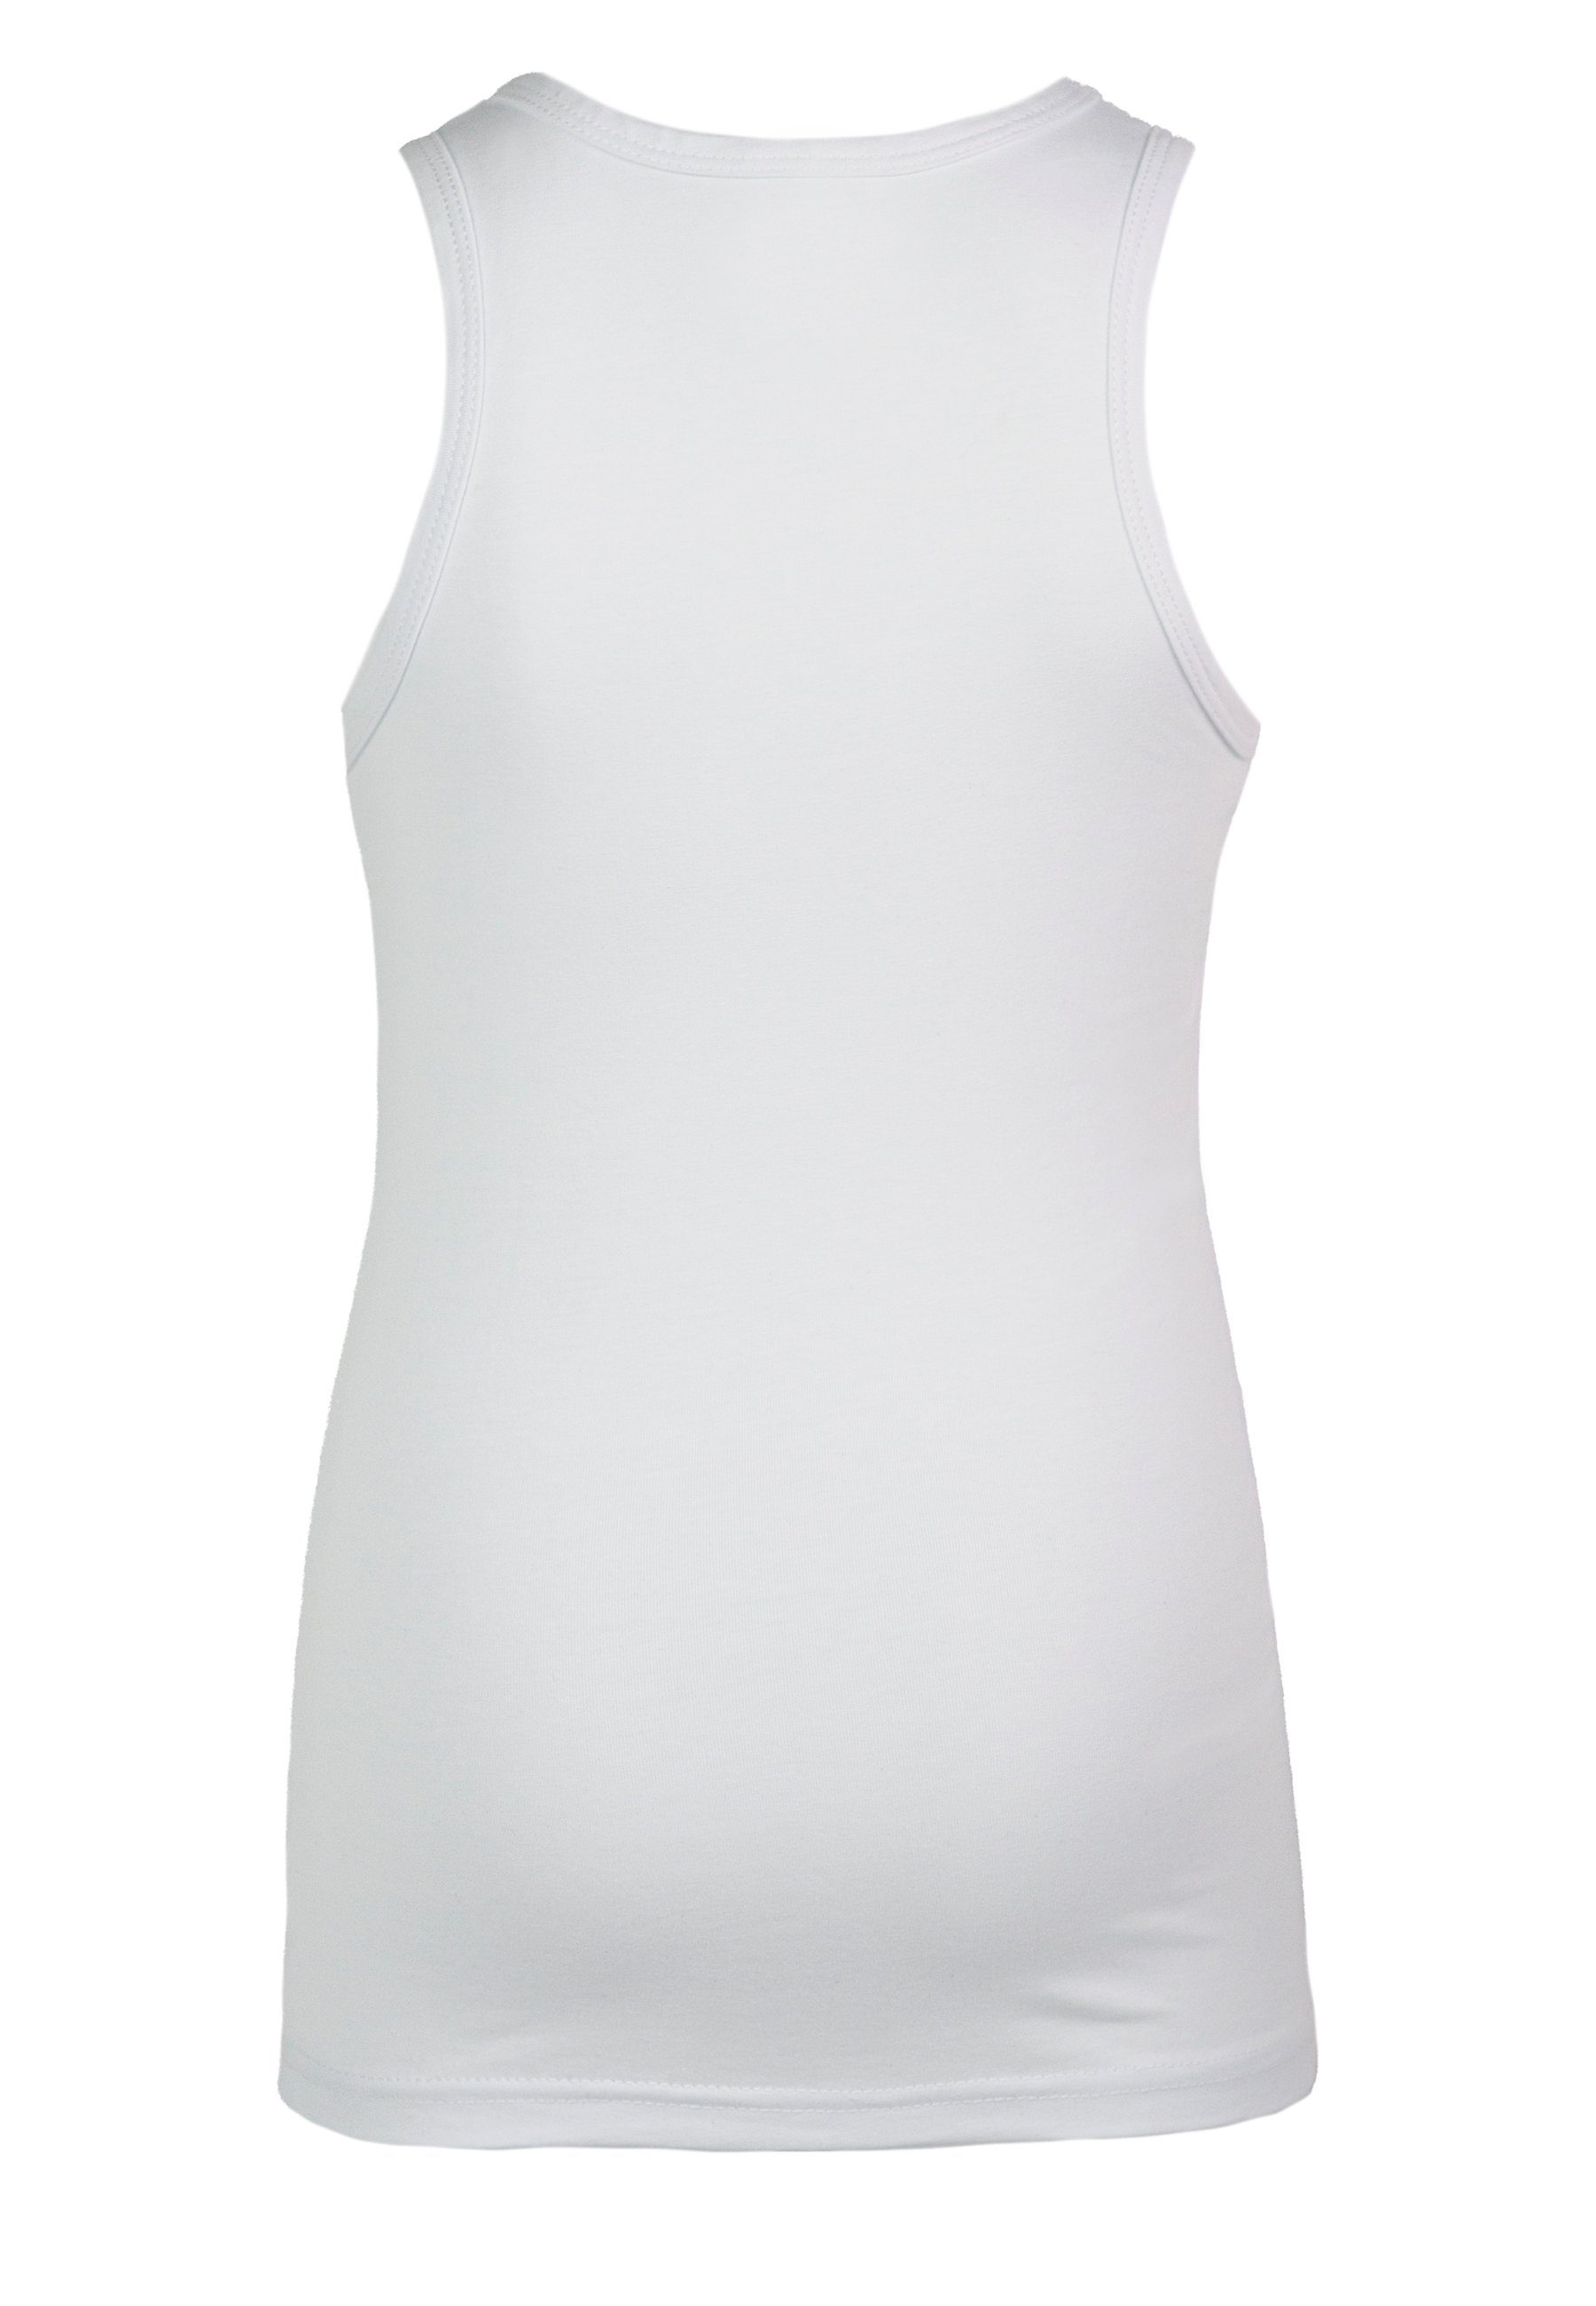 CARBURANT Mädchen, Unterhemden Unterhemd für Weiß 2er-Pack,